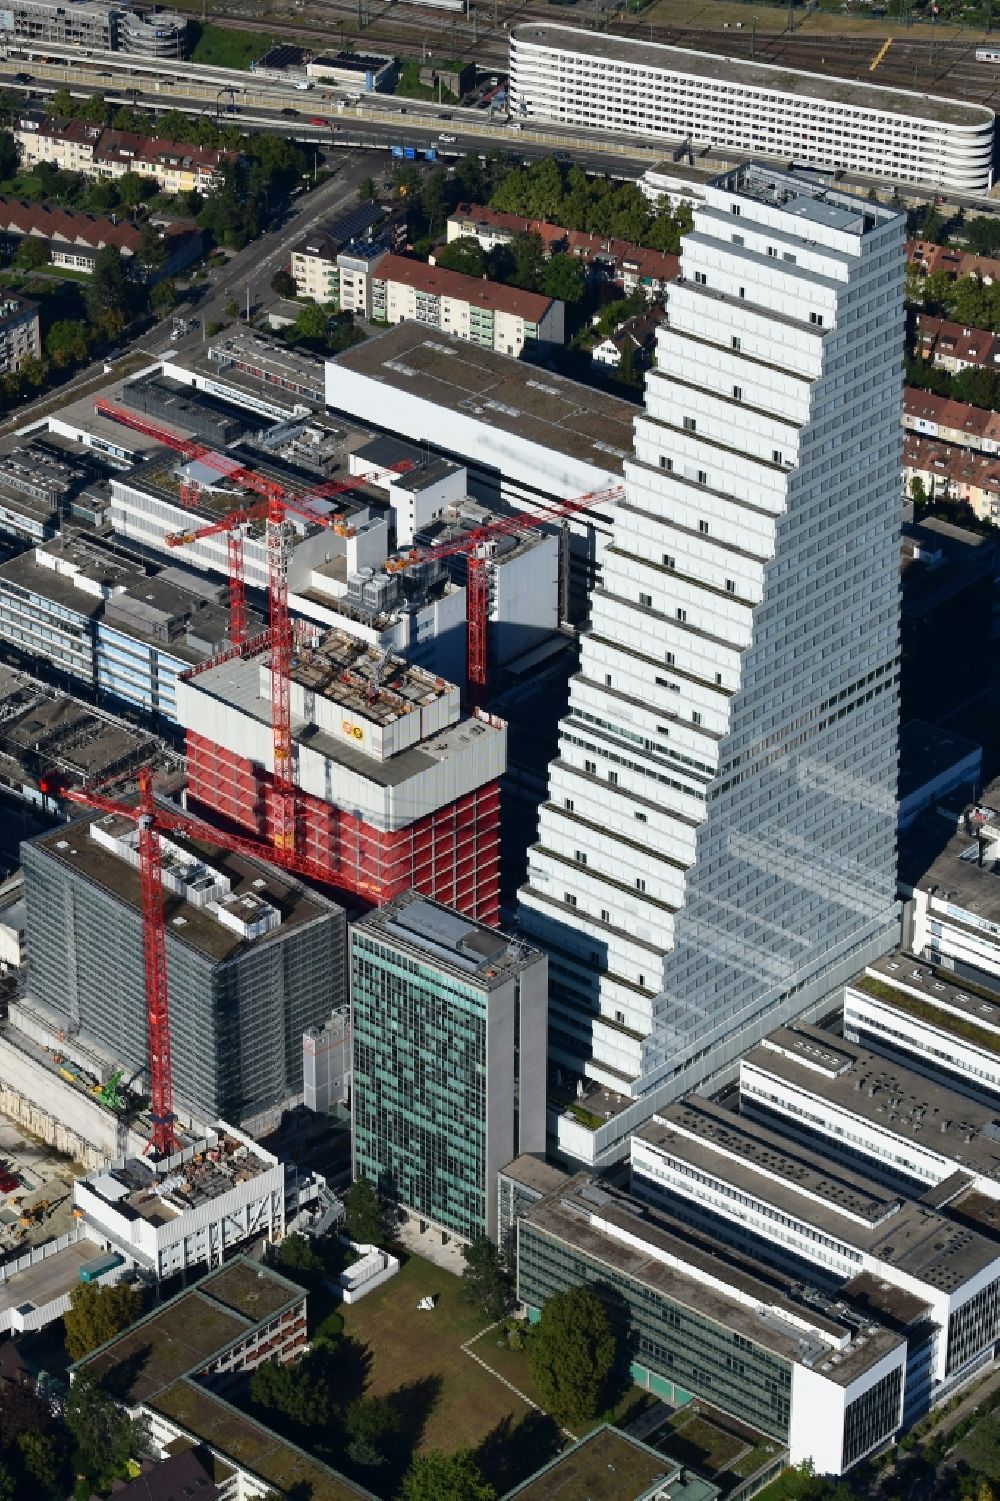 Luftbild Basel - Erweiterungs- Baustellen am Areal und Betriebsgelände der Pharmafirma Roche mit dem Roche- Turm - Hochhaus in Basel in der Schweiz